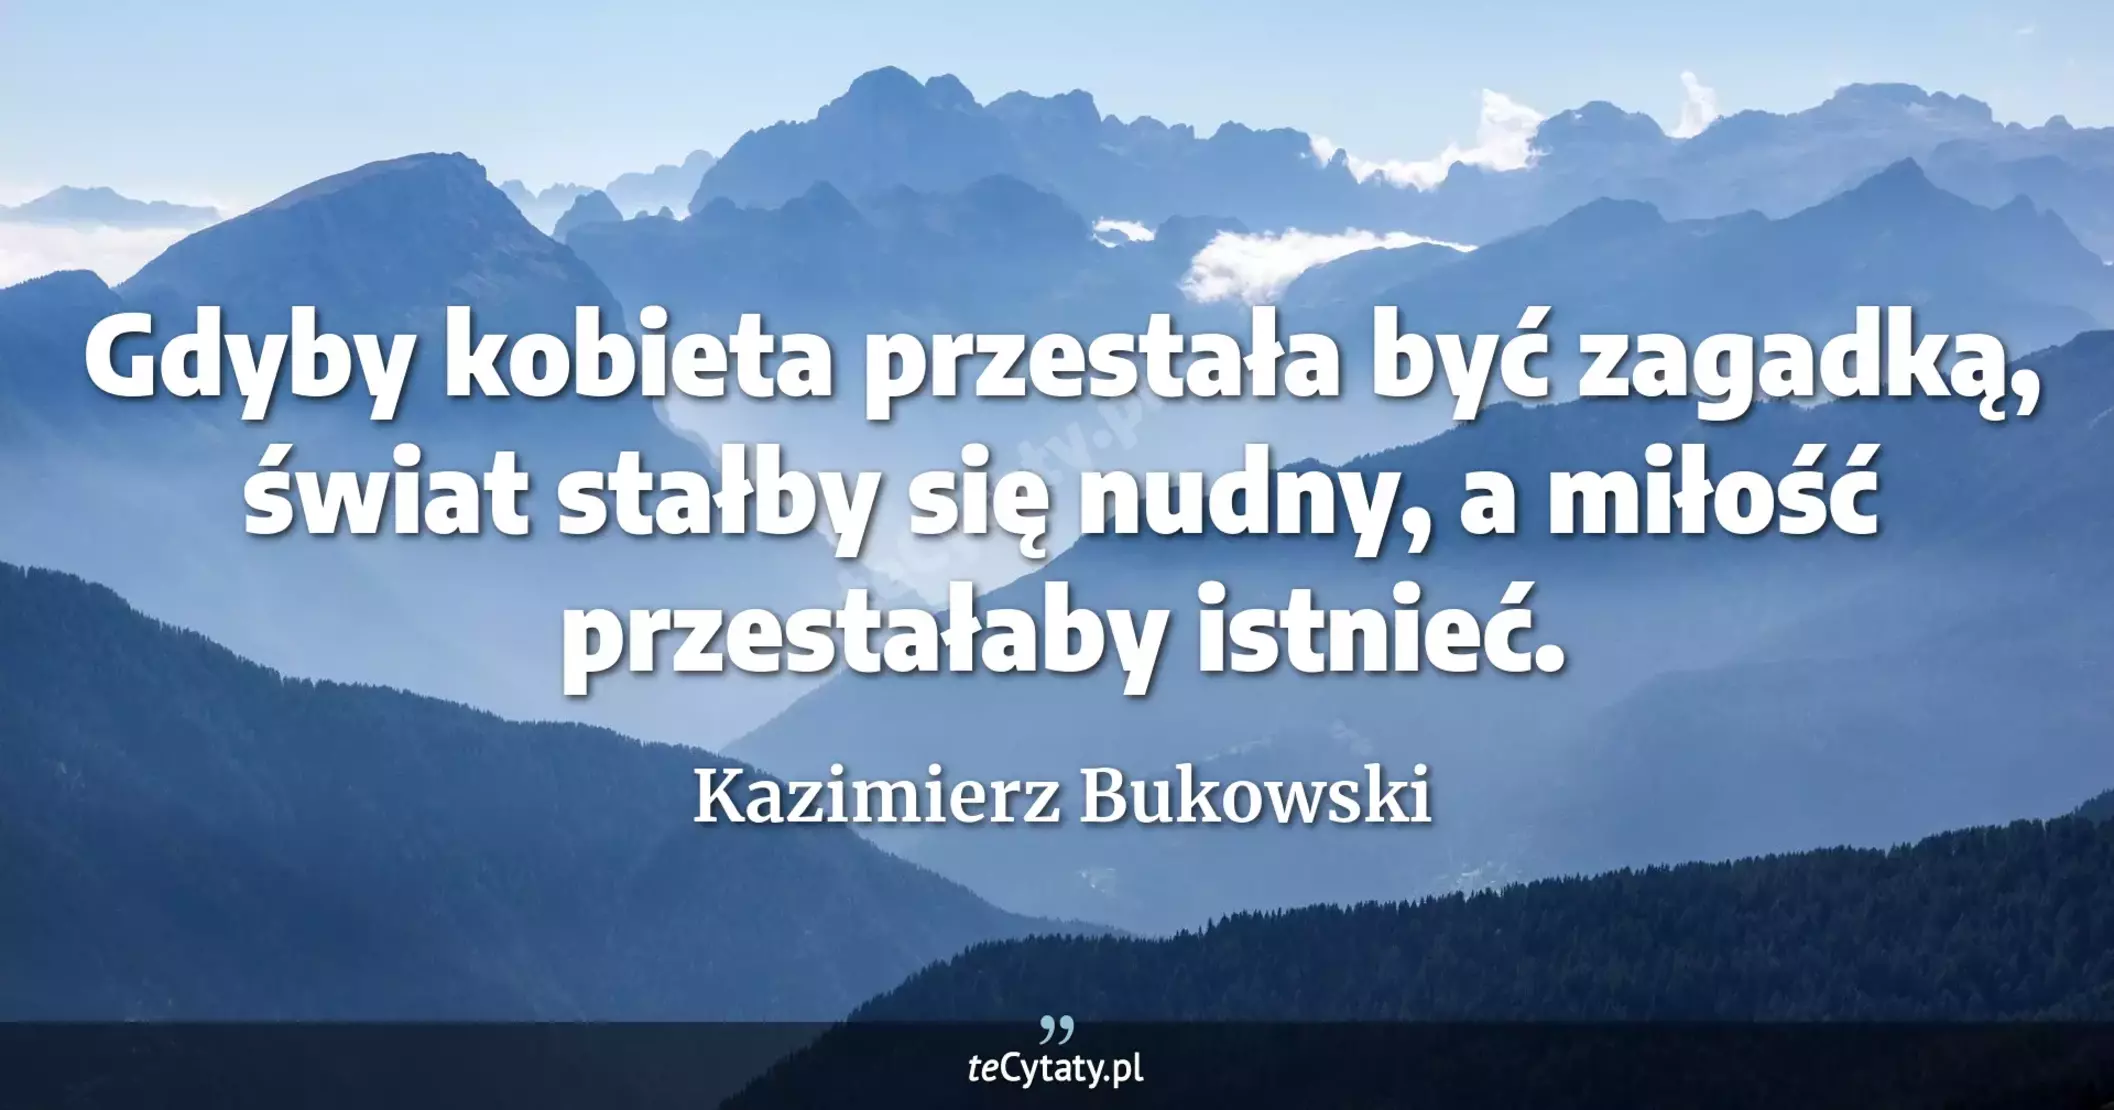 Gdyby kobieta przestała być zagadką, świat stałby się nudny, a miłość przestałaby istnieć. - Kazimierz Bukowski